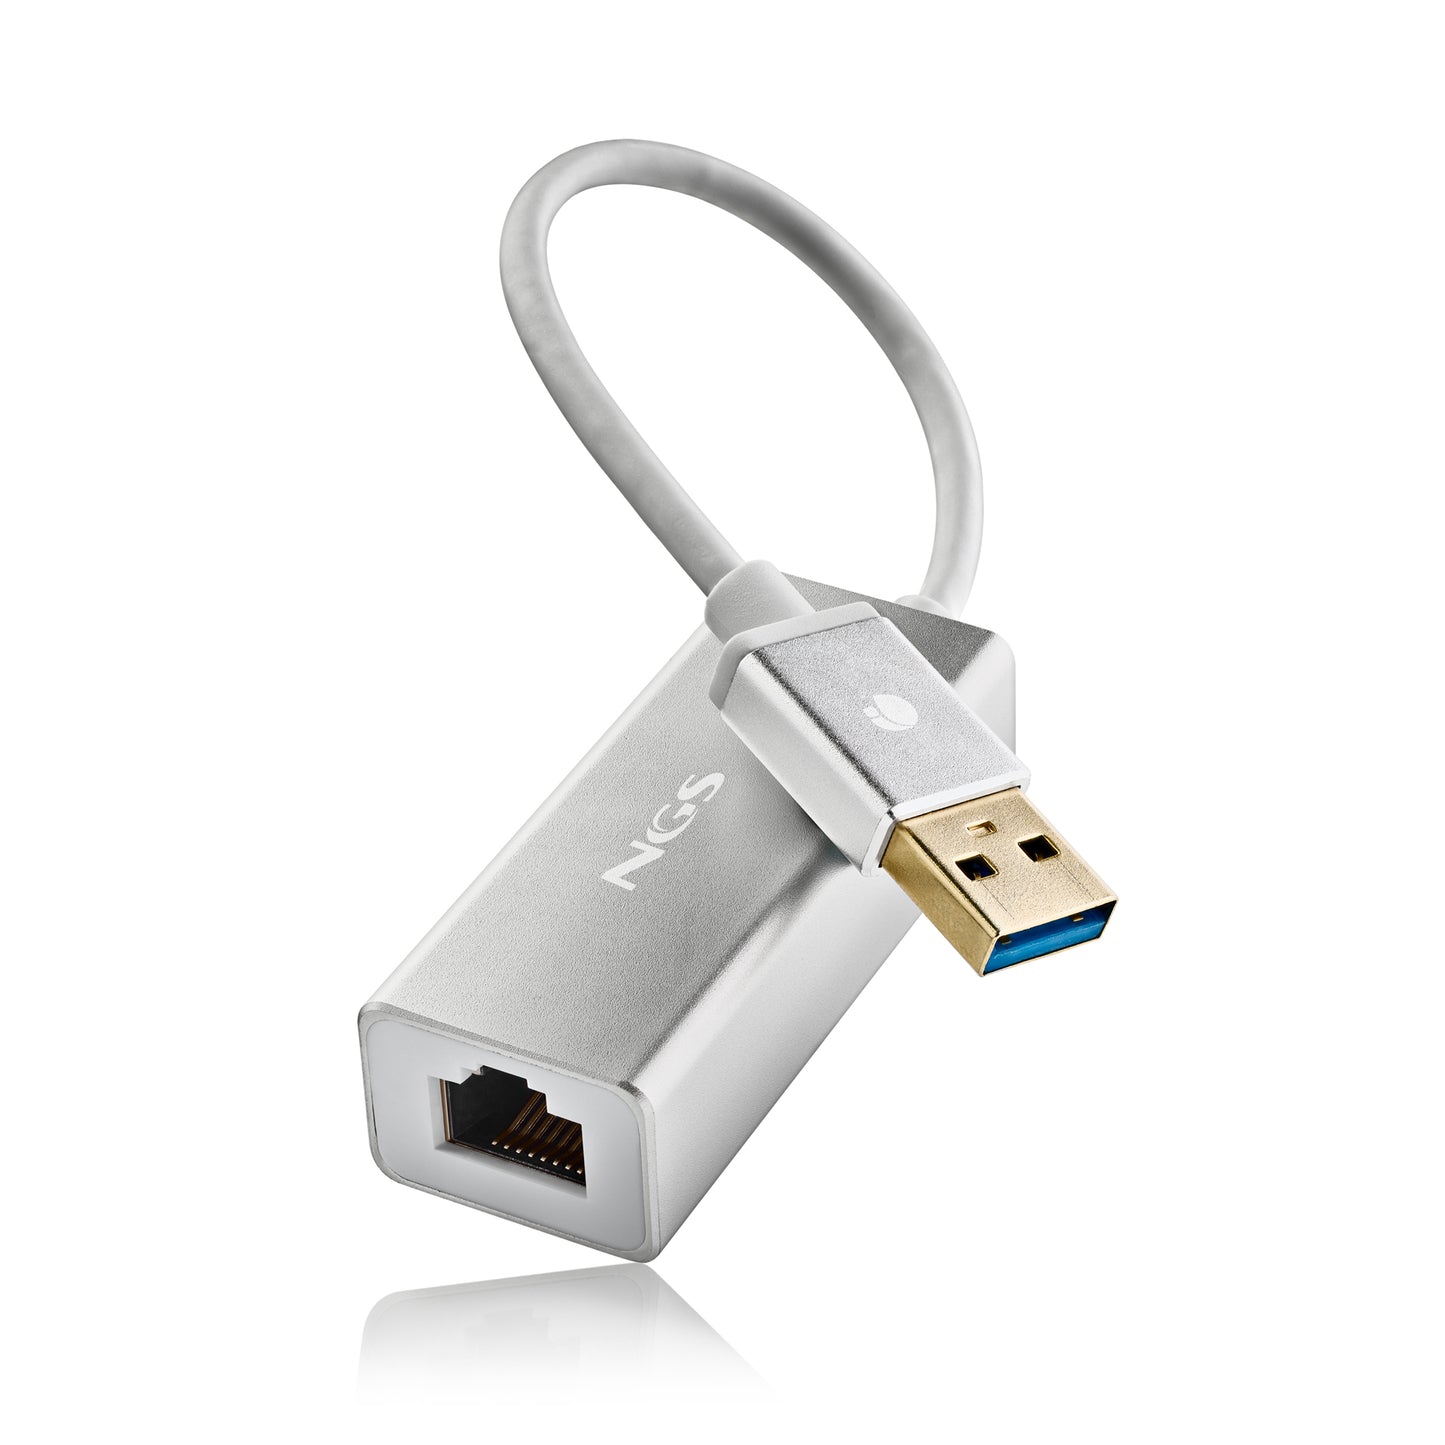 NGS ADATTATORE DI RETE DA USB 3,0 A RJ45 PER PC E LAPTOP, 15cm [HACKER3.0]